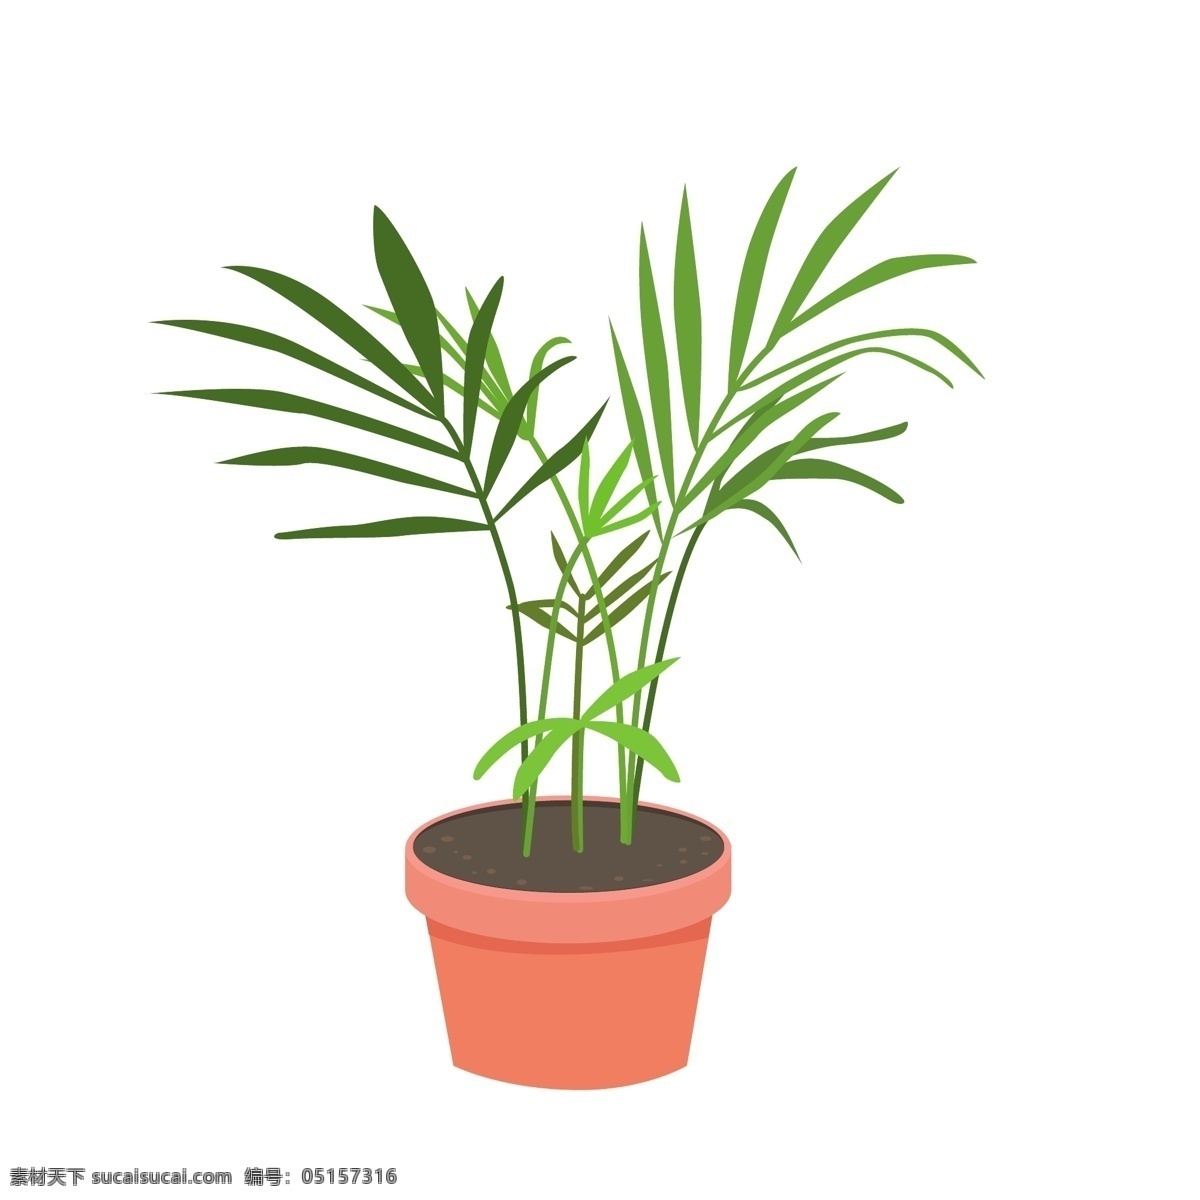 袖珍 椰子 家居 植物 热带 室内 盆栽 矢量 元素 绿植 热带植物 室内植物 袖珍椰子 吸甲醛 家居植物